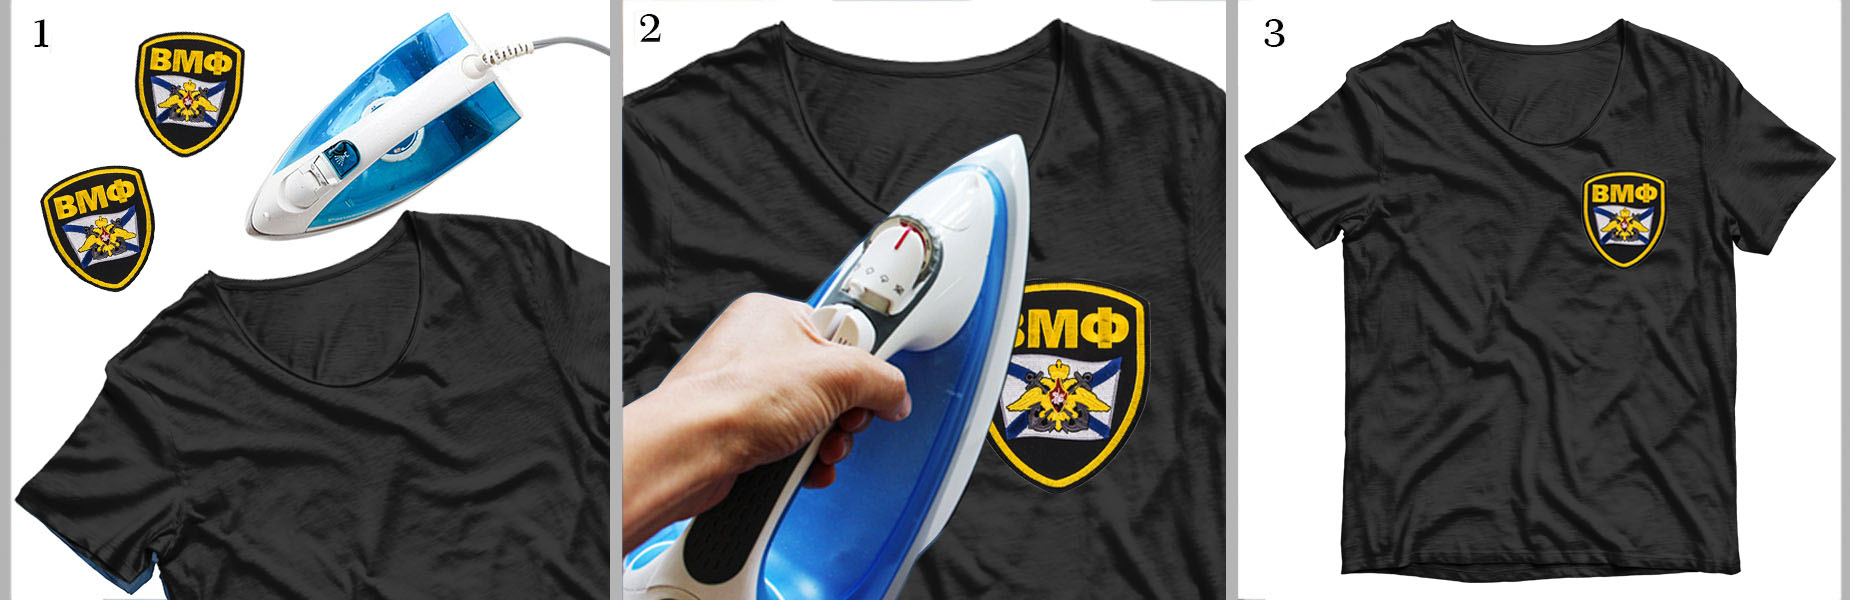 Термоклеевый шеврон ВМФ от Военпро для футболок